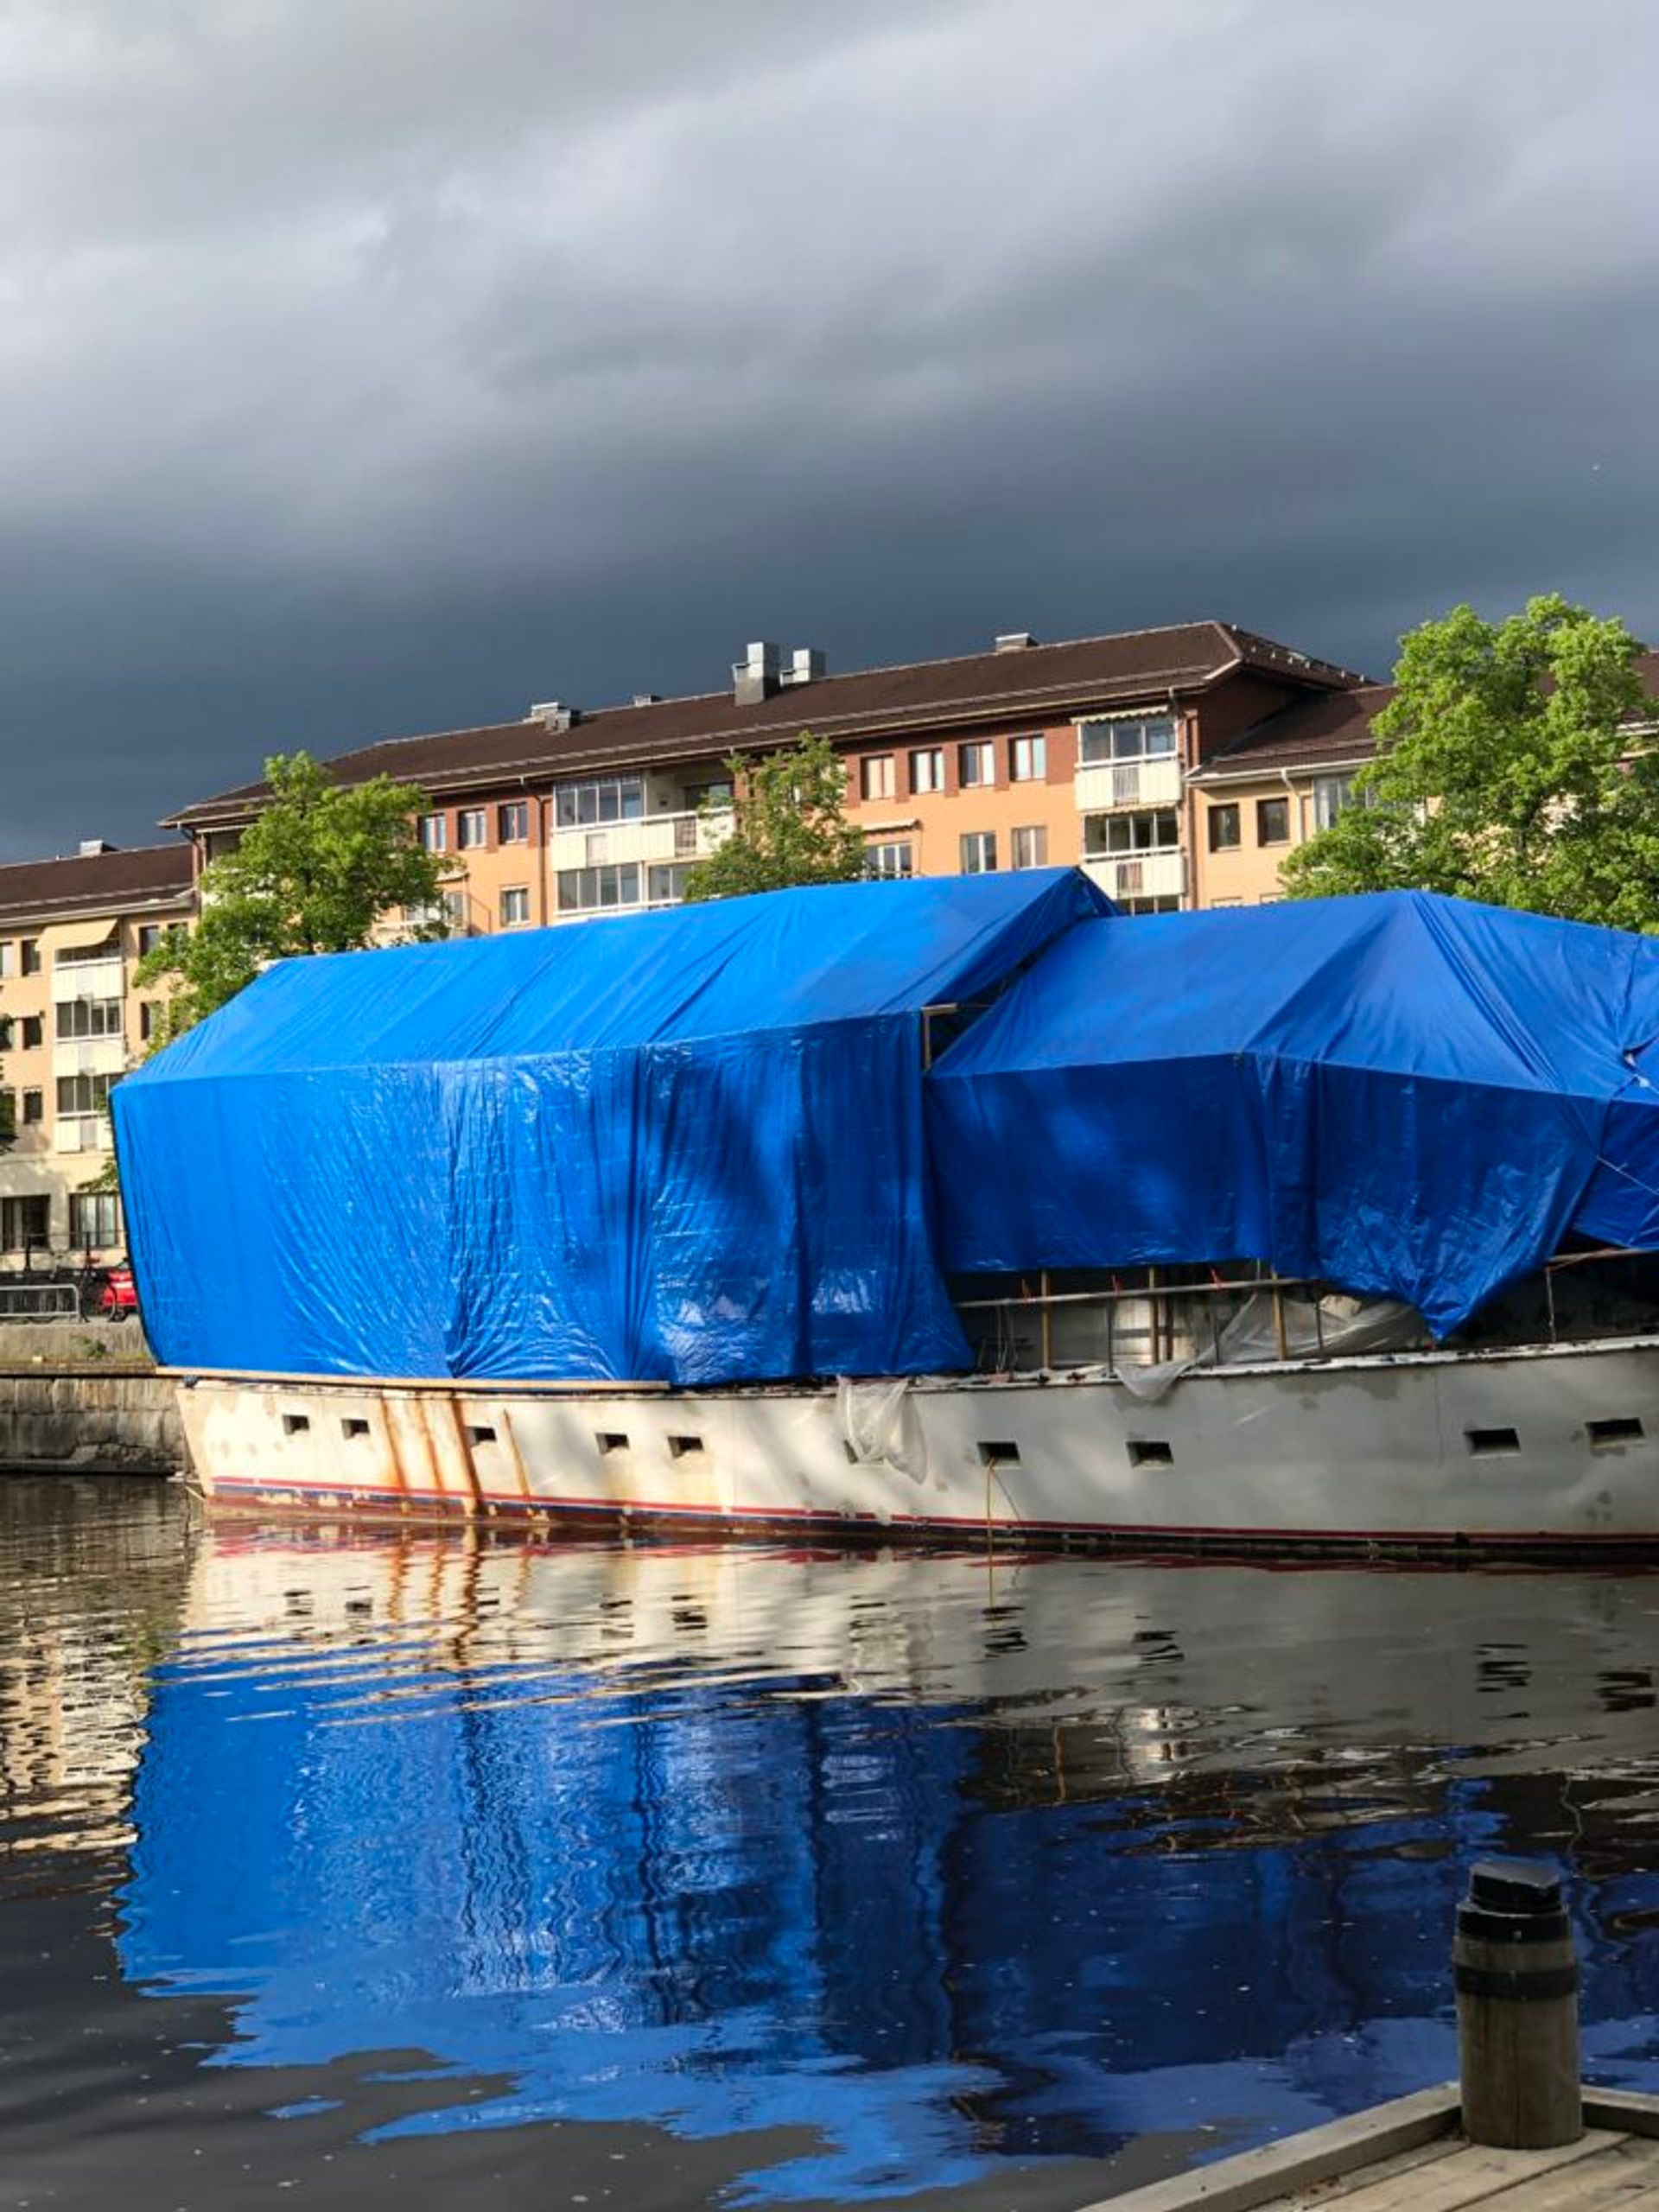 A sleeping boat in Uppsala, Spring 2019